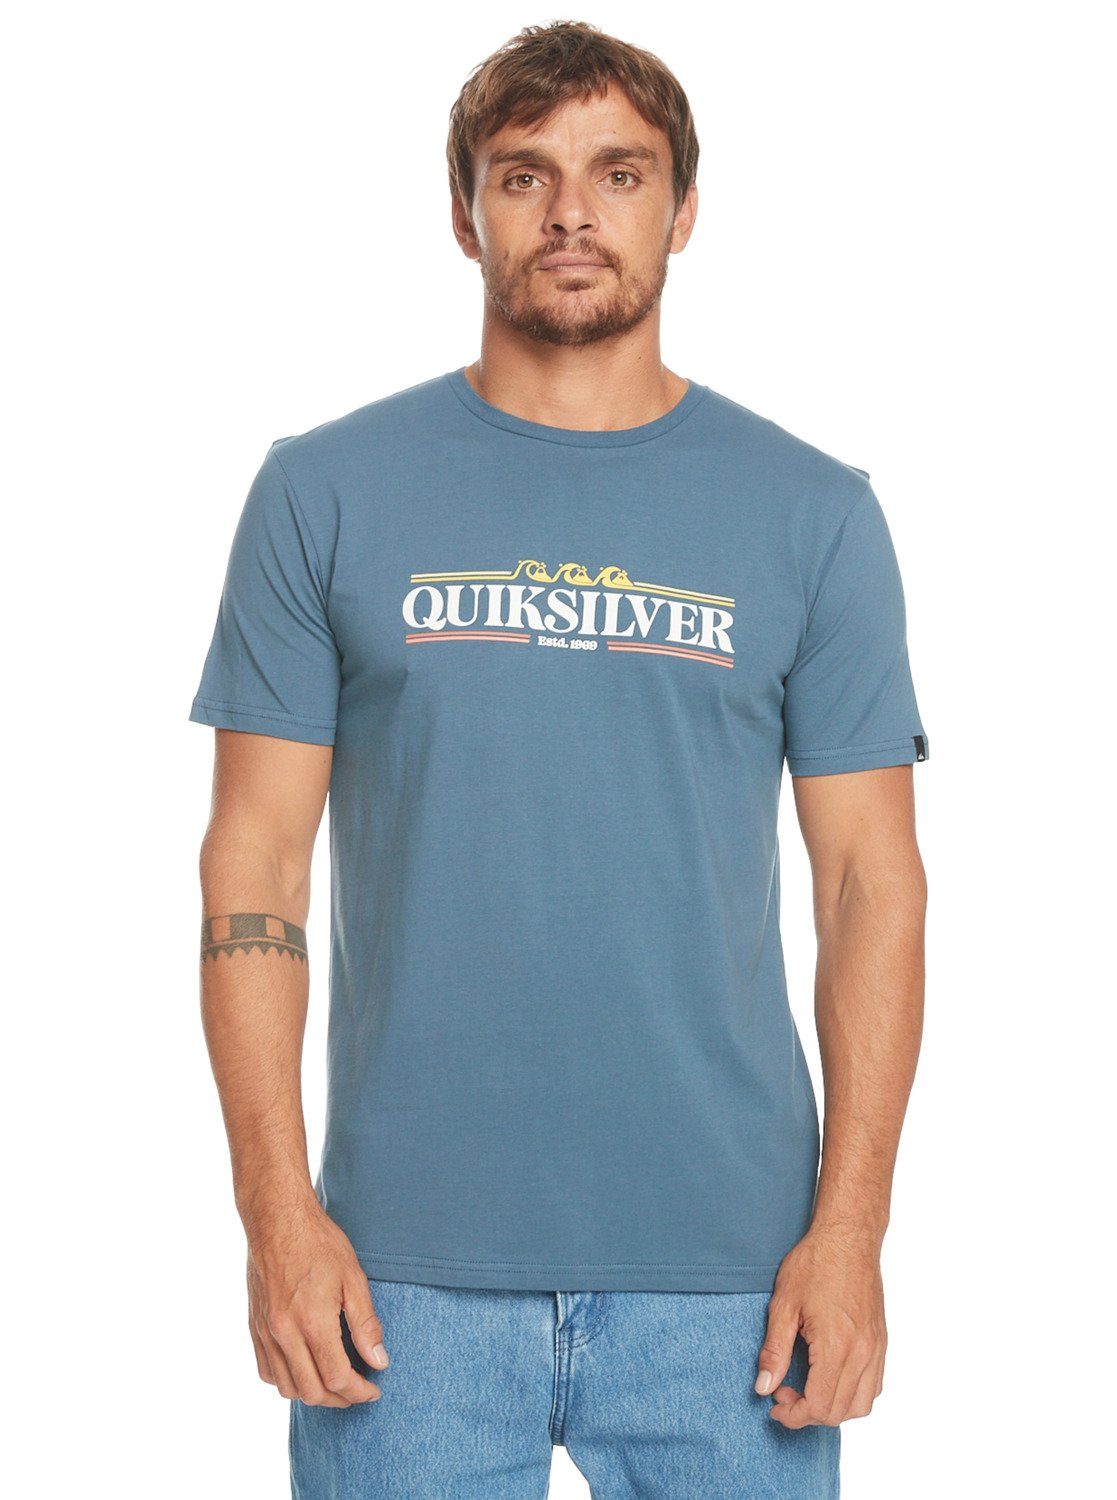 Gradient Bering T-Shirt Line Quiksilver Sea